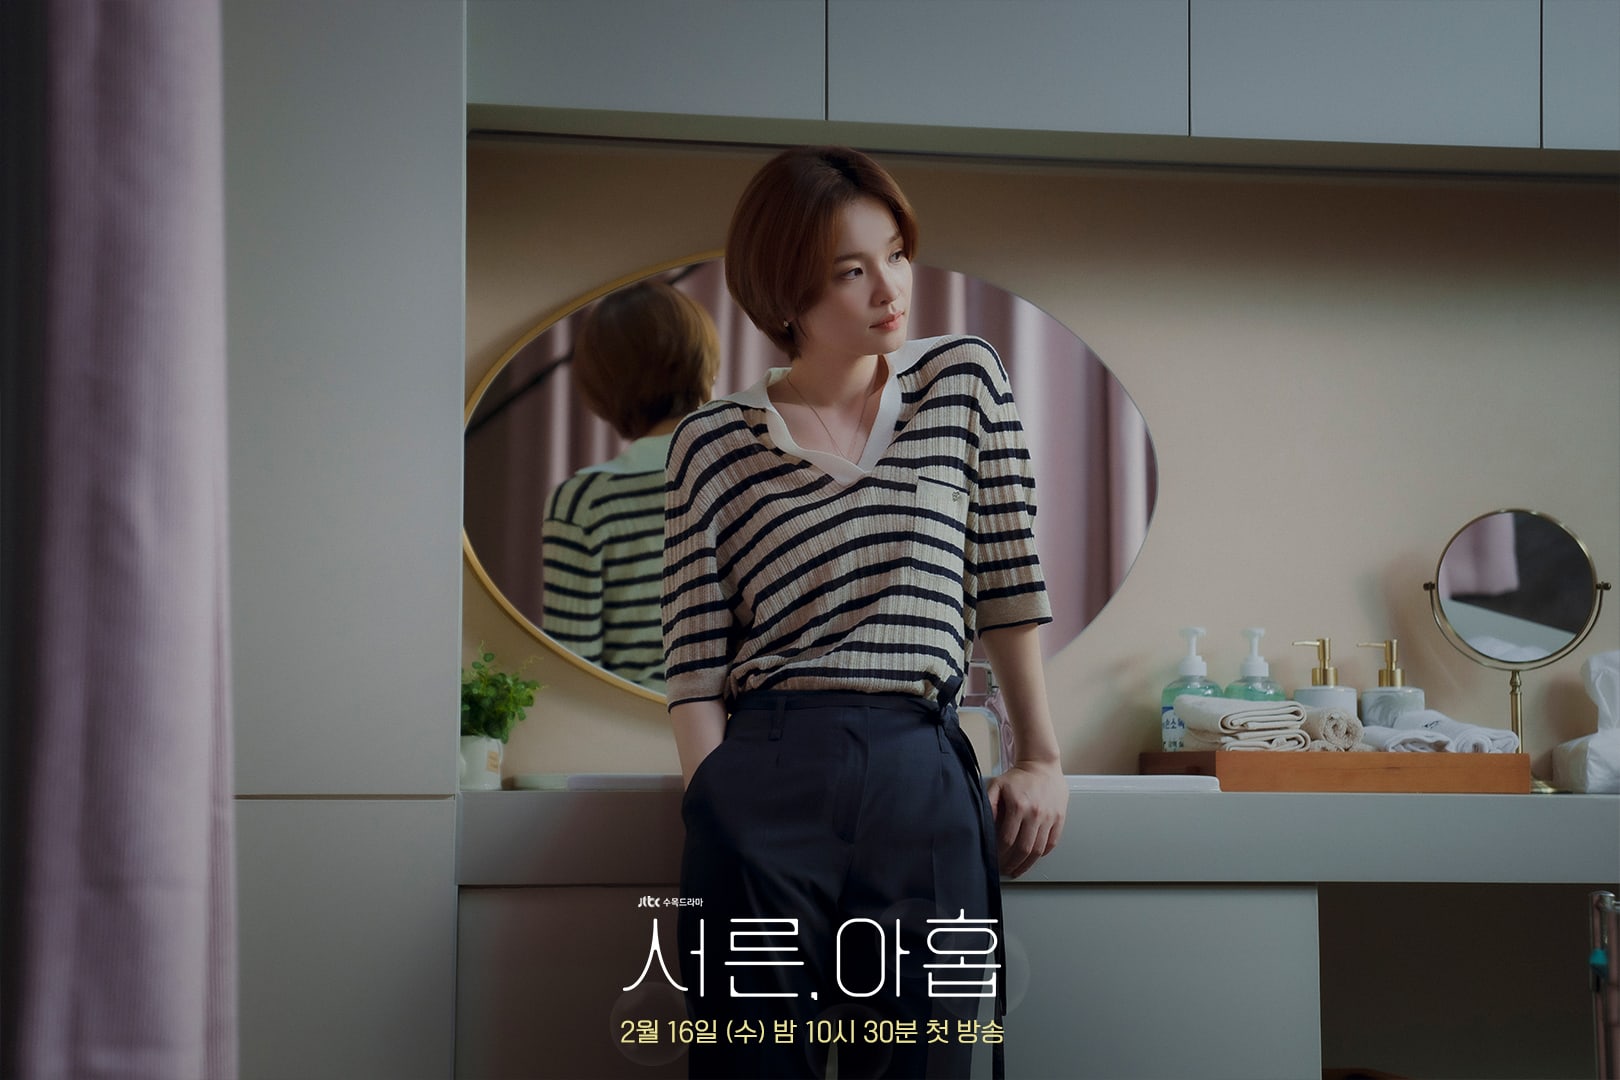 phim 39 Jeon Mi Do vai Jung Chan Young 04 - 39: Phim tâm lý về cuộc đời người phụ nữ trước ngưỡng tuổi 40